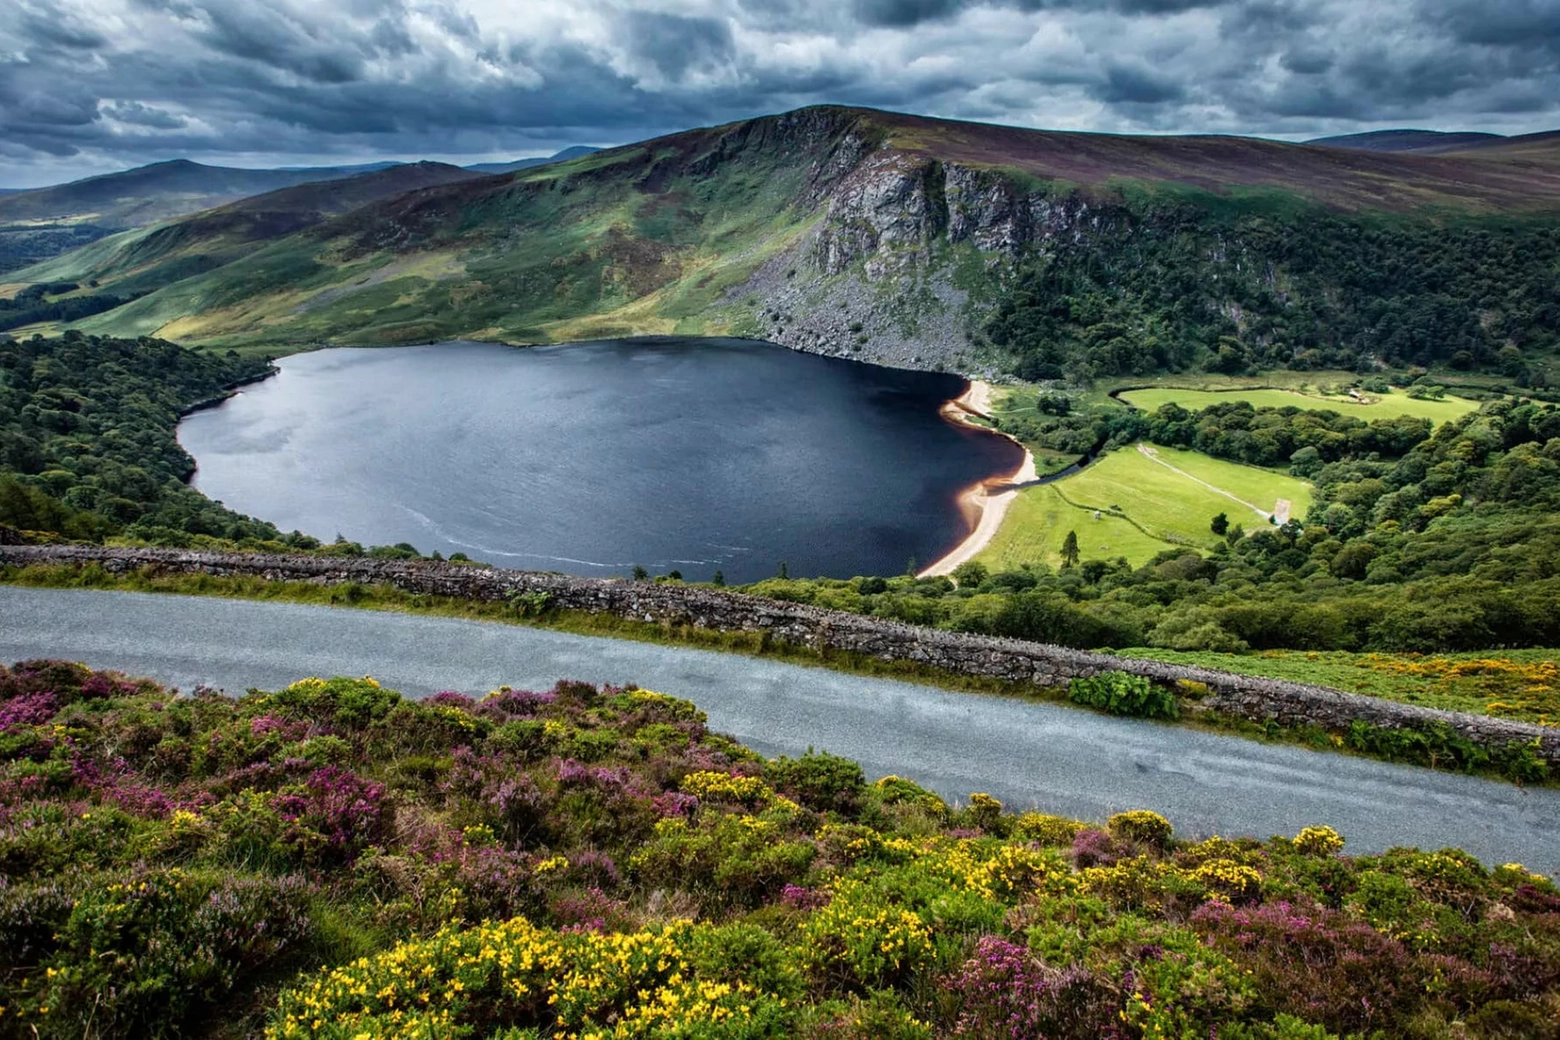 Il parco naturale dei Monti Wicklow, in Irlanda: si va a cavallo lungo la Sally Gap fino al Lough Tay, noto anche come “Lago Guinness”, dalla spiaggia bianca bagnata da acque scure